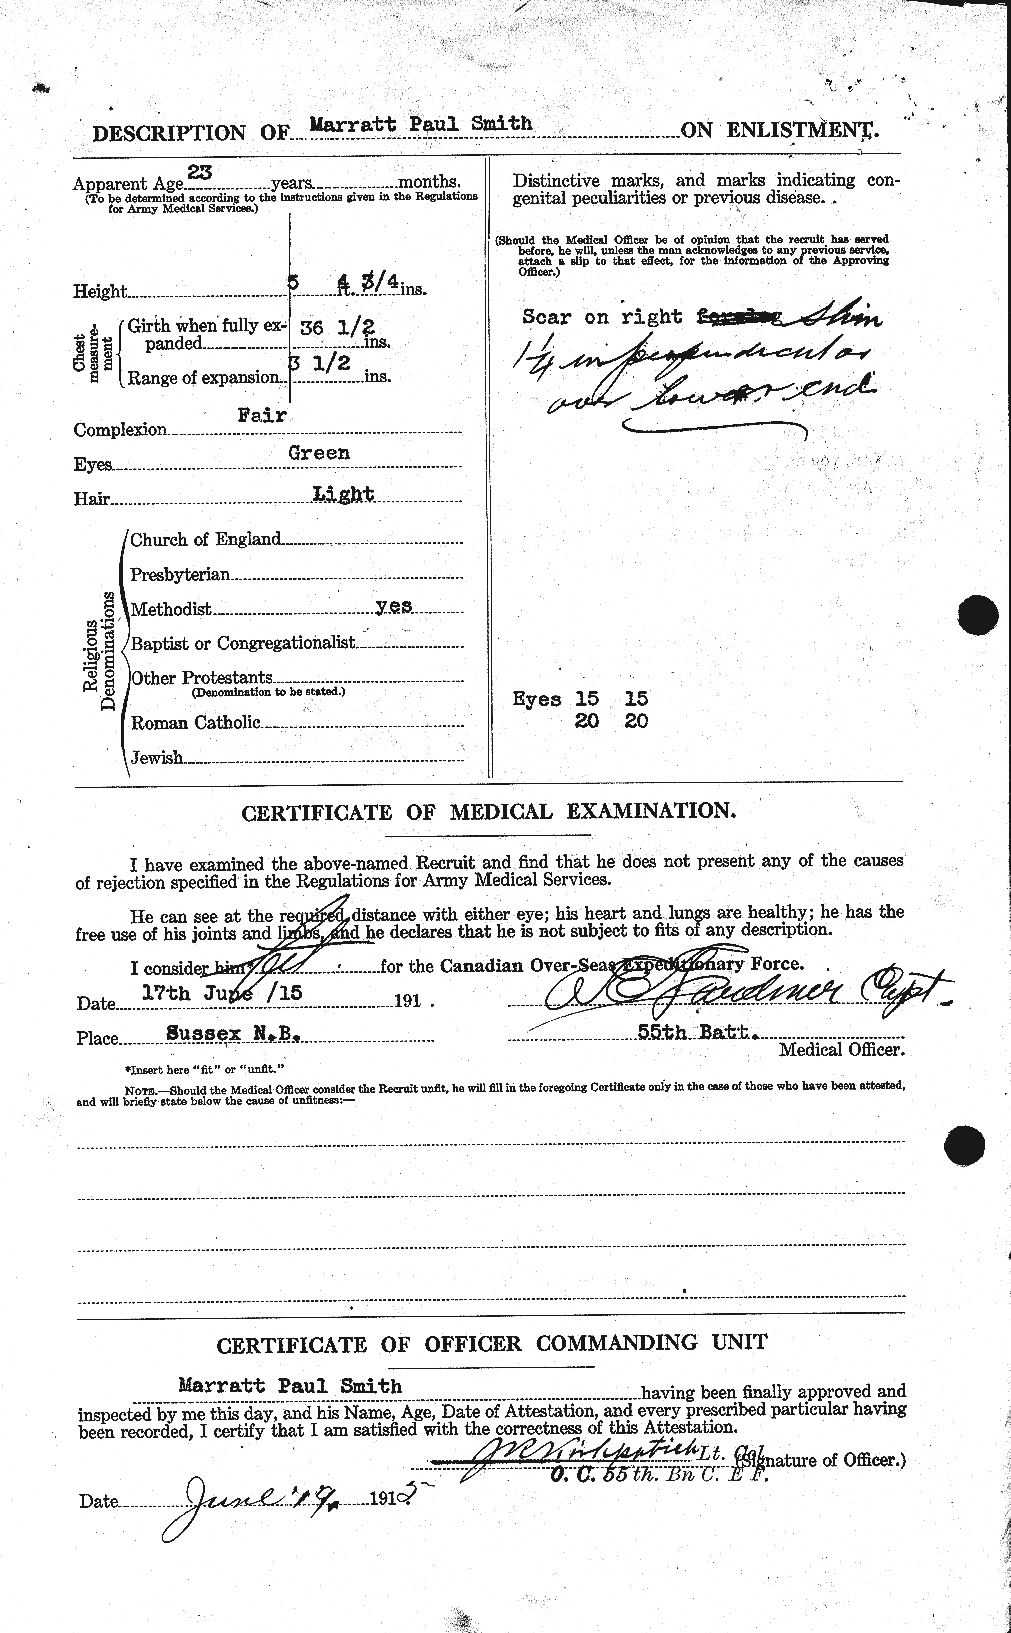 Dossiers du Personnel de la Première Guerre mondiale - CEC 104780b